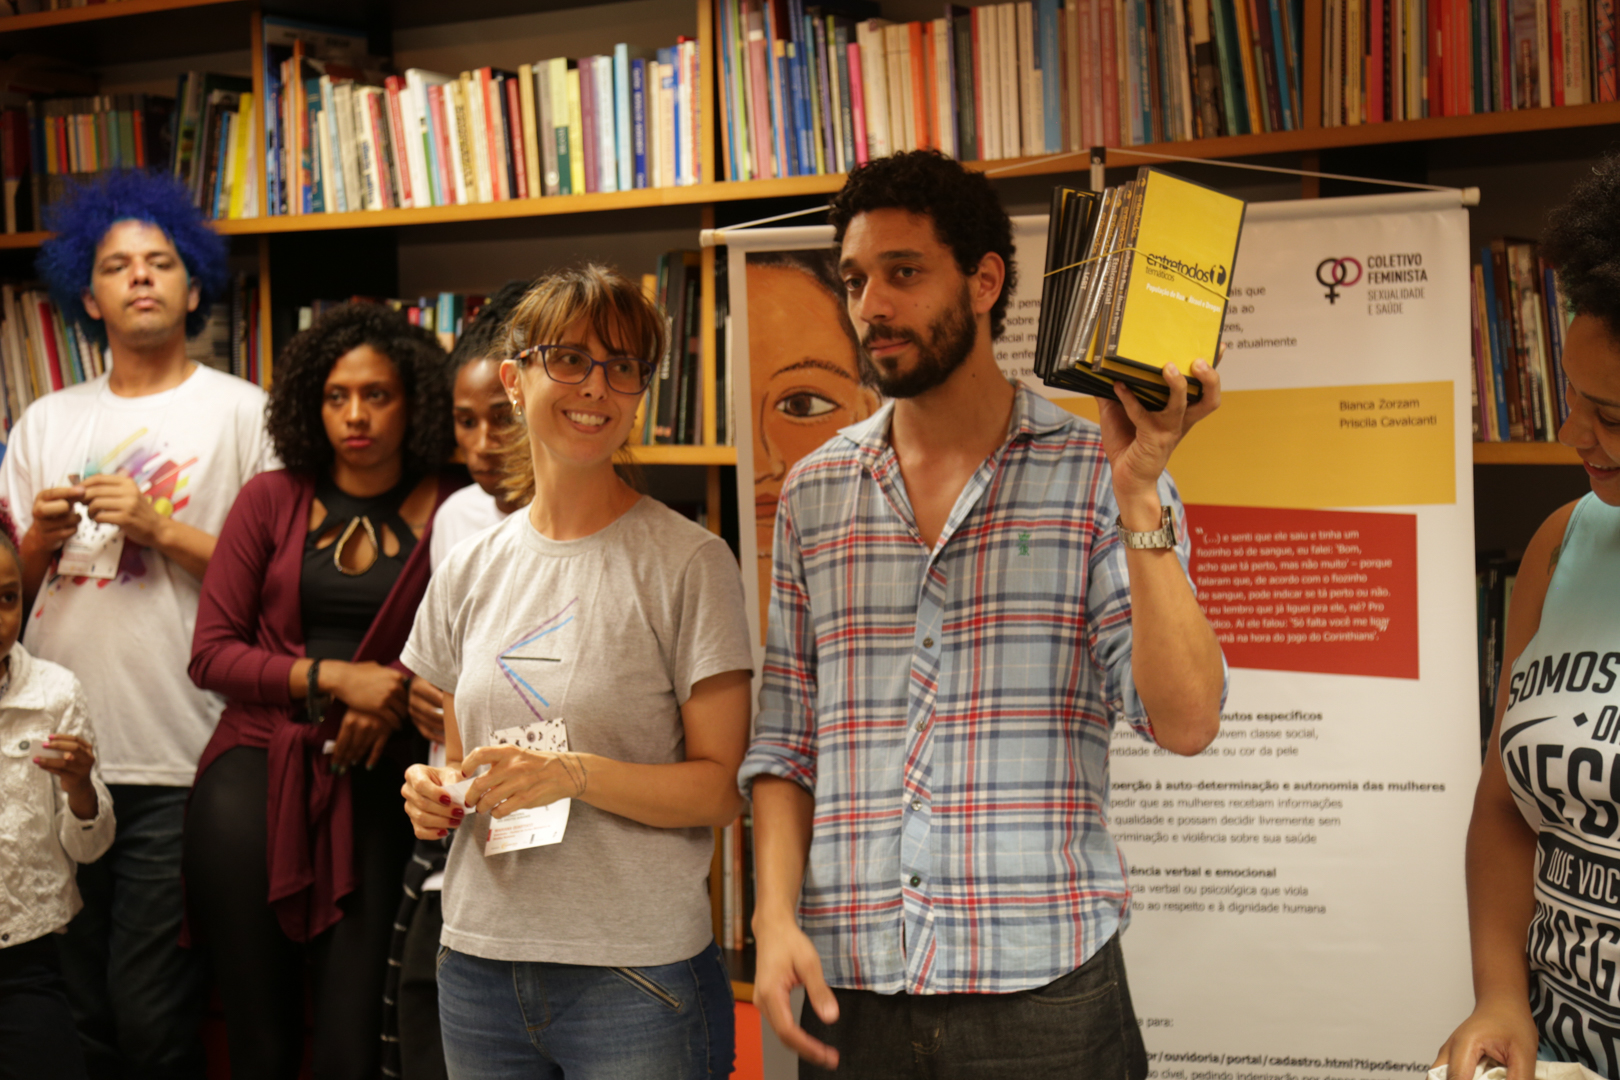 Participante expõe seu projeto durante a III Feira de Ideias, realizada pela Conectas, em seu escritório, em São Paulo (SP), em comemoração ao Dia Internacional dos Direitos Humanos.